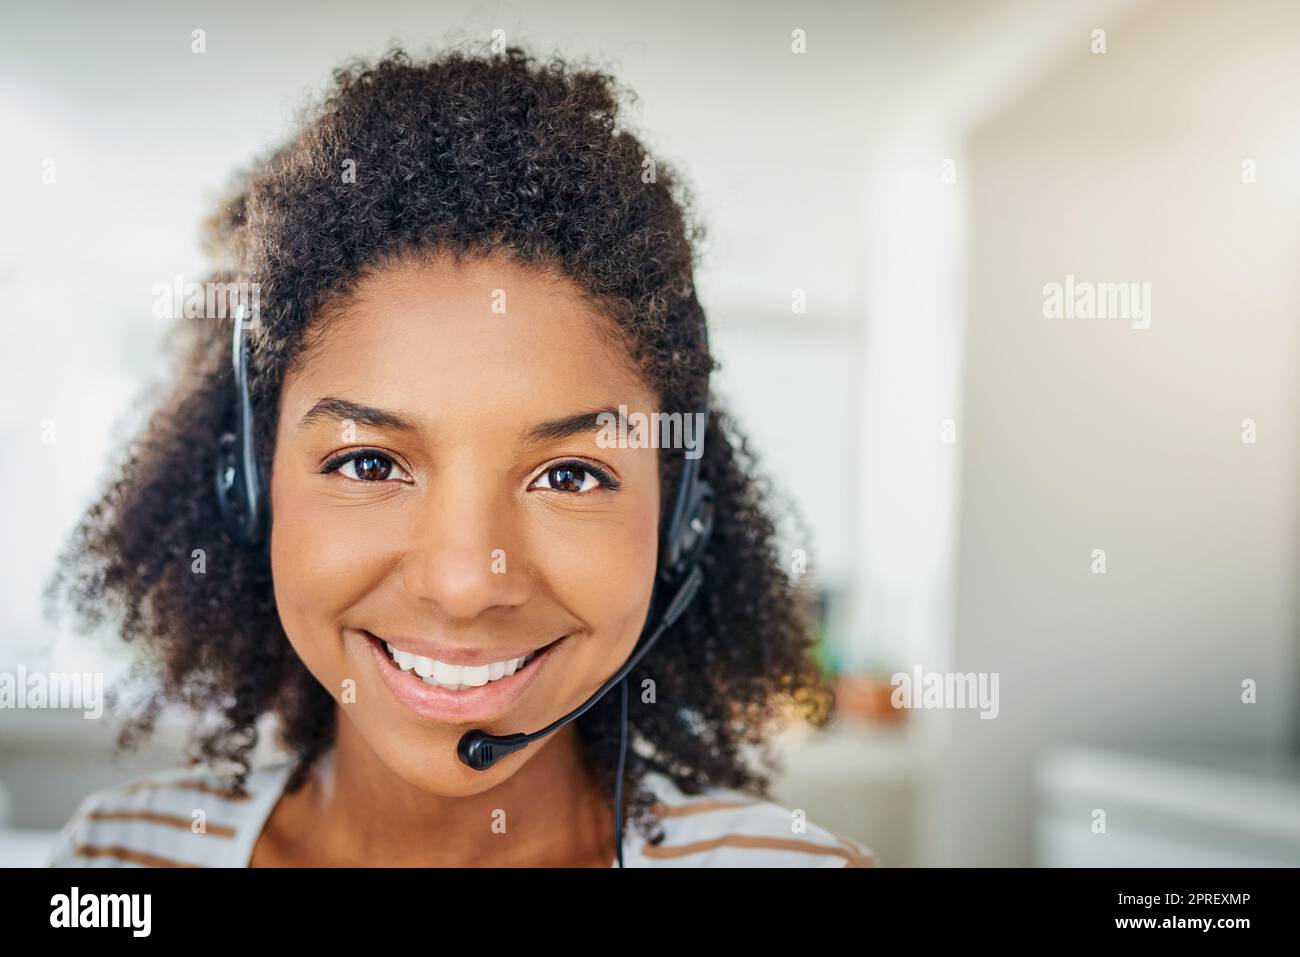 Zu Ihren Diensten. Porträt einer jungen Frau, die ein Headset trägt, während sie zu Hause arbeitet. Stockfoto